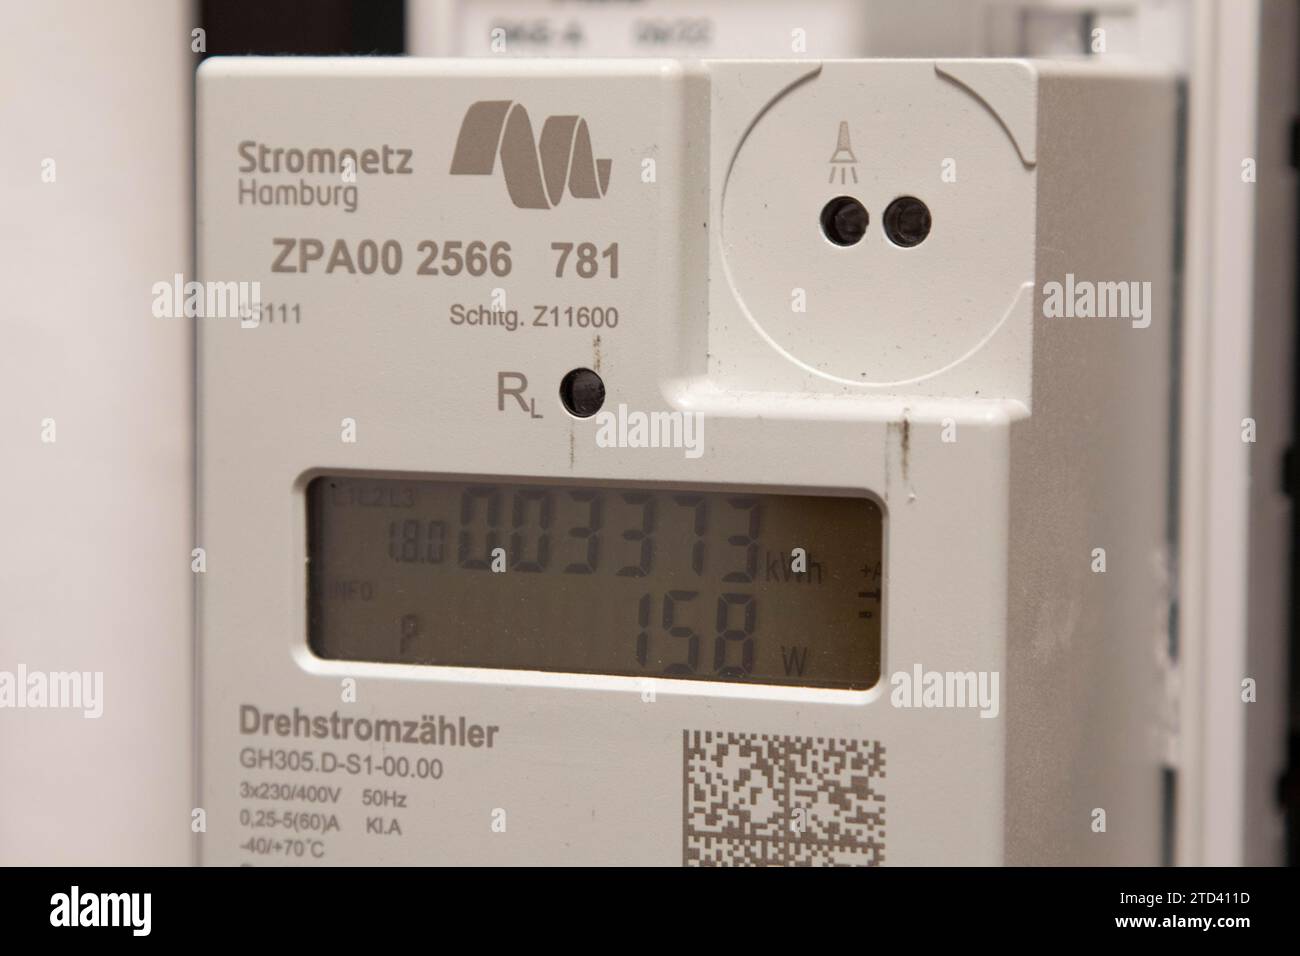 Symbolisches Bild der Energiekosten im Haushalt, digitaler Stromzähler in einer Wohnung, Betreiber Stromnetz Hamburg, Hamburg, Deutschland Stockfoto